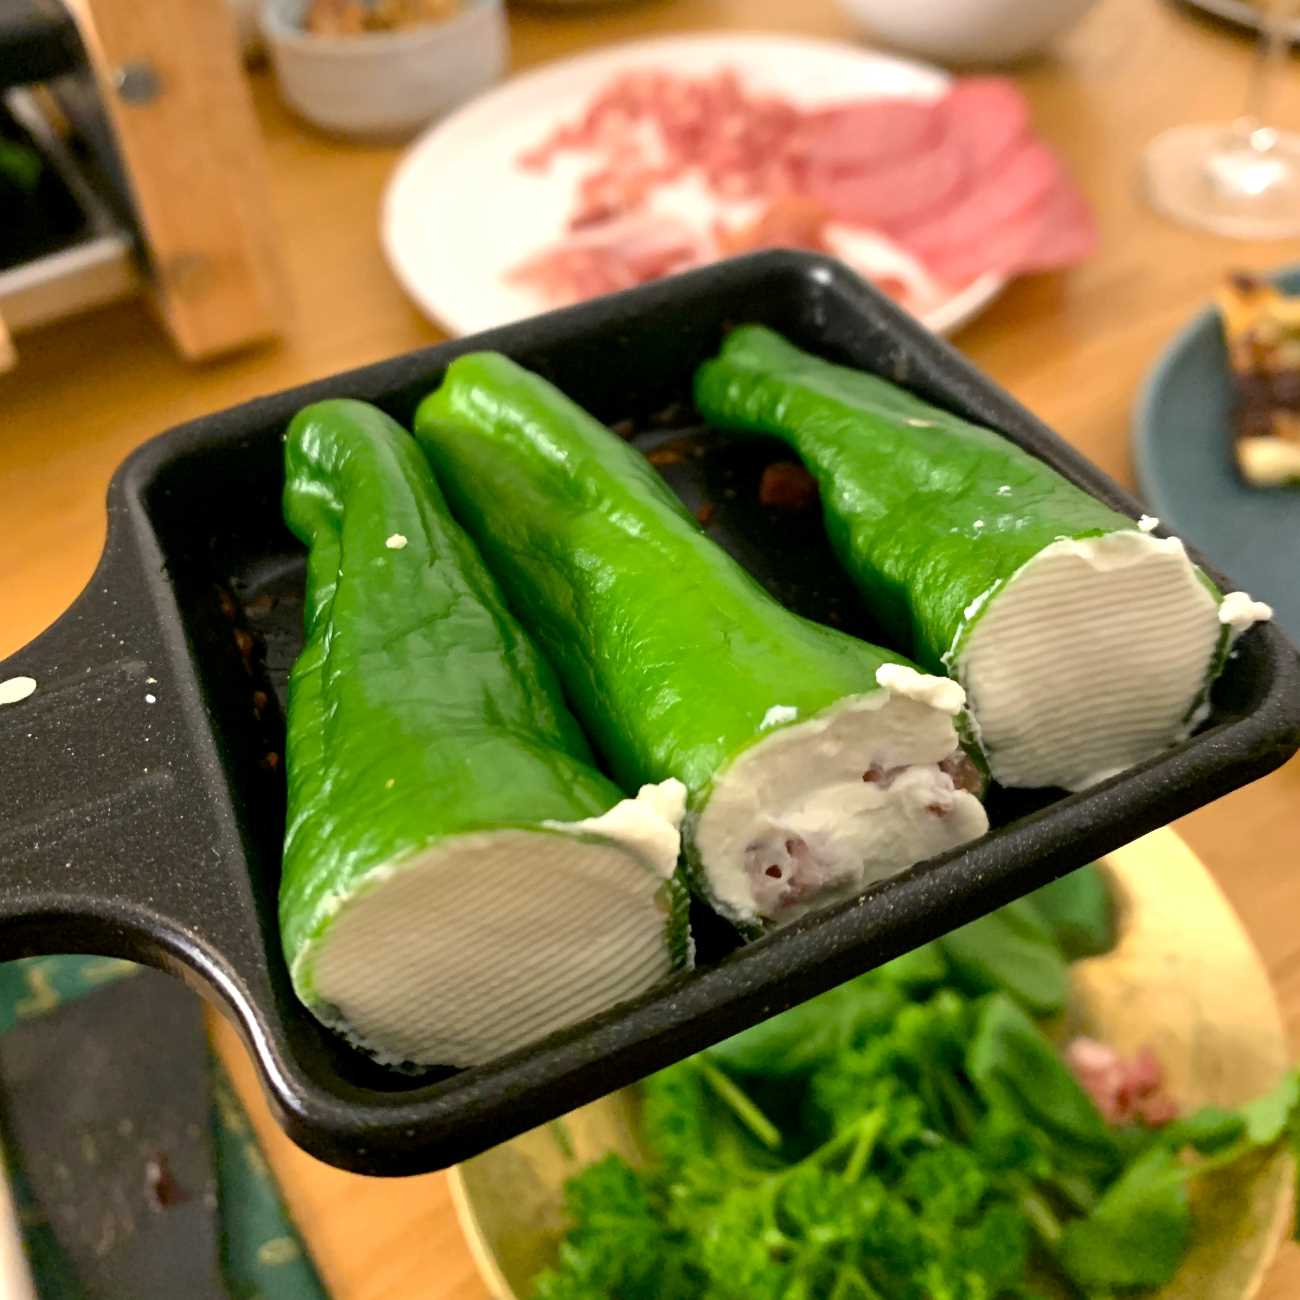 Gefüllte Pimentos werden zu dritt in einem Raclette-Pfännchen gezeigt.